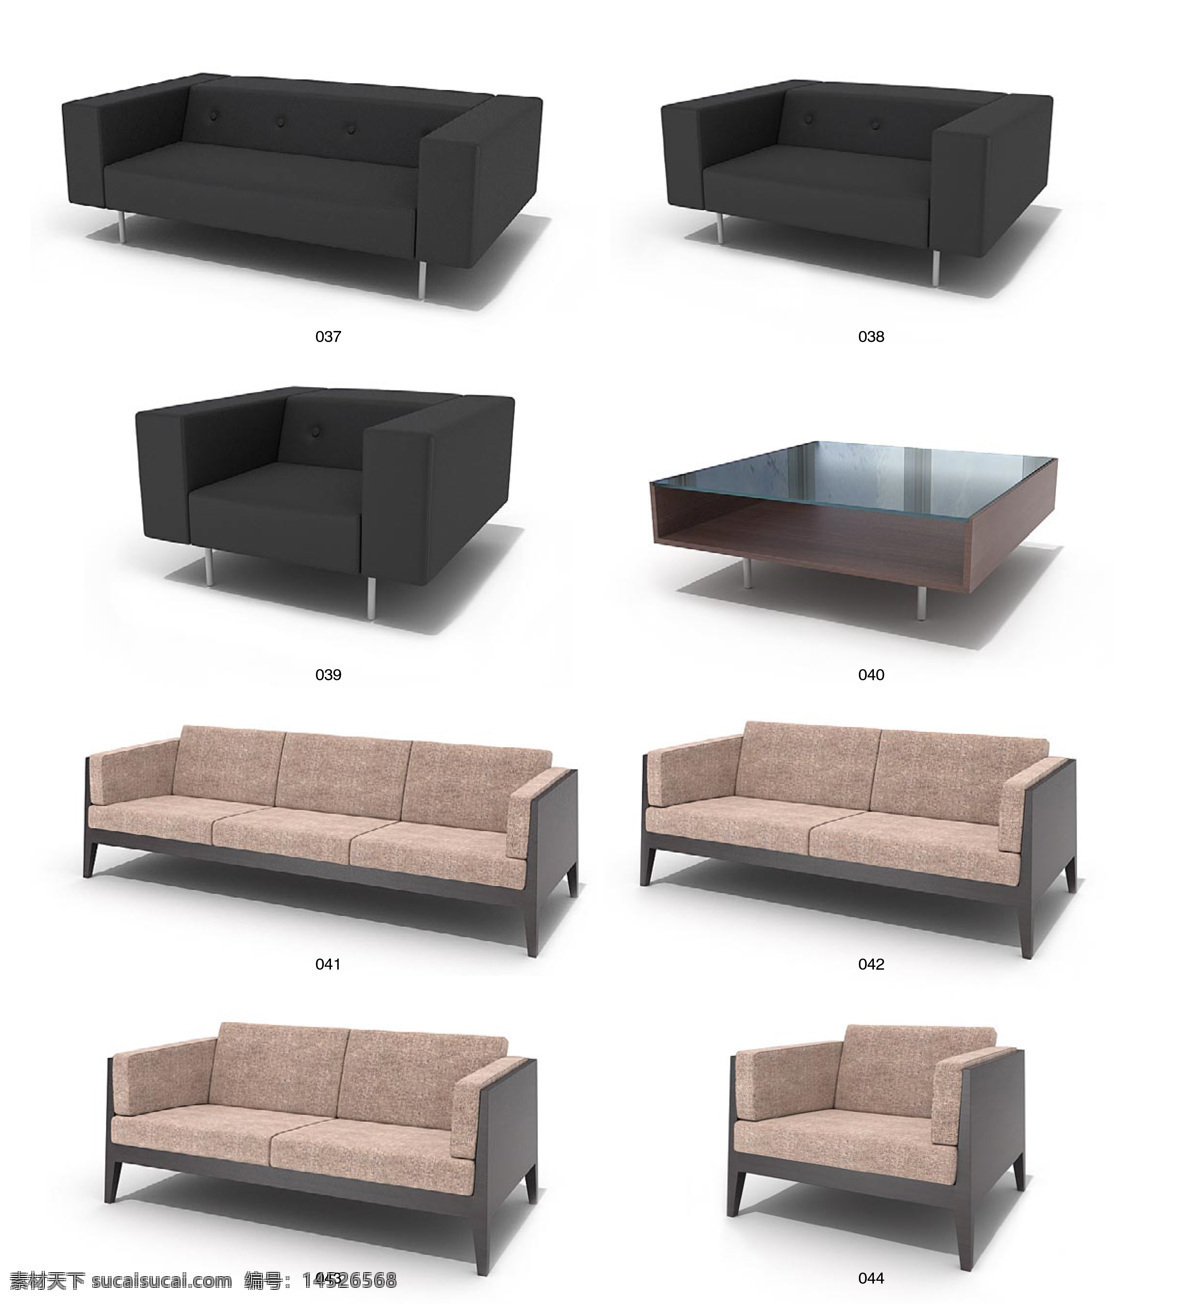 精美 沙发椅子 茶几 max 模型 带 材质 贴图 沙发 3d家具模型 3d模型素材 3d设计模型 创意沙发 家具模型 3d 精美家具模型 沙发椅子茶几 白色